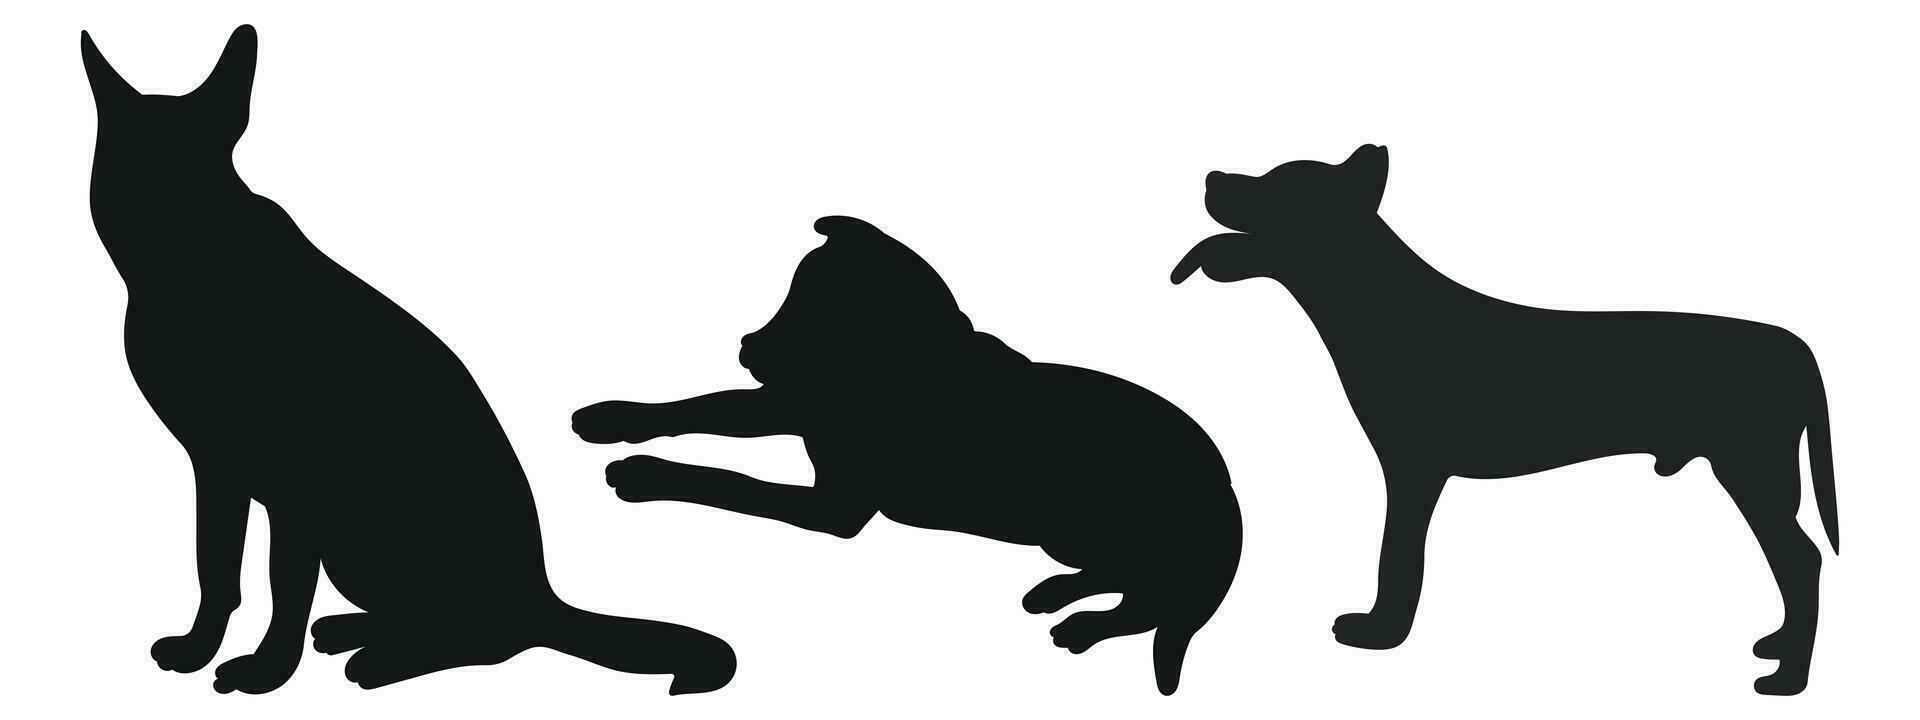 bosquejo imagen de negro silueta perros, contorno de mascotas. ir, de pie, sesión, mintiendo, mentir, correr, saltando, capacitación, caminando, protegiendo, posando, jugar, demostración vector